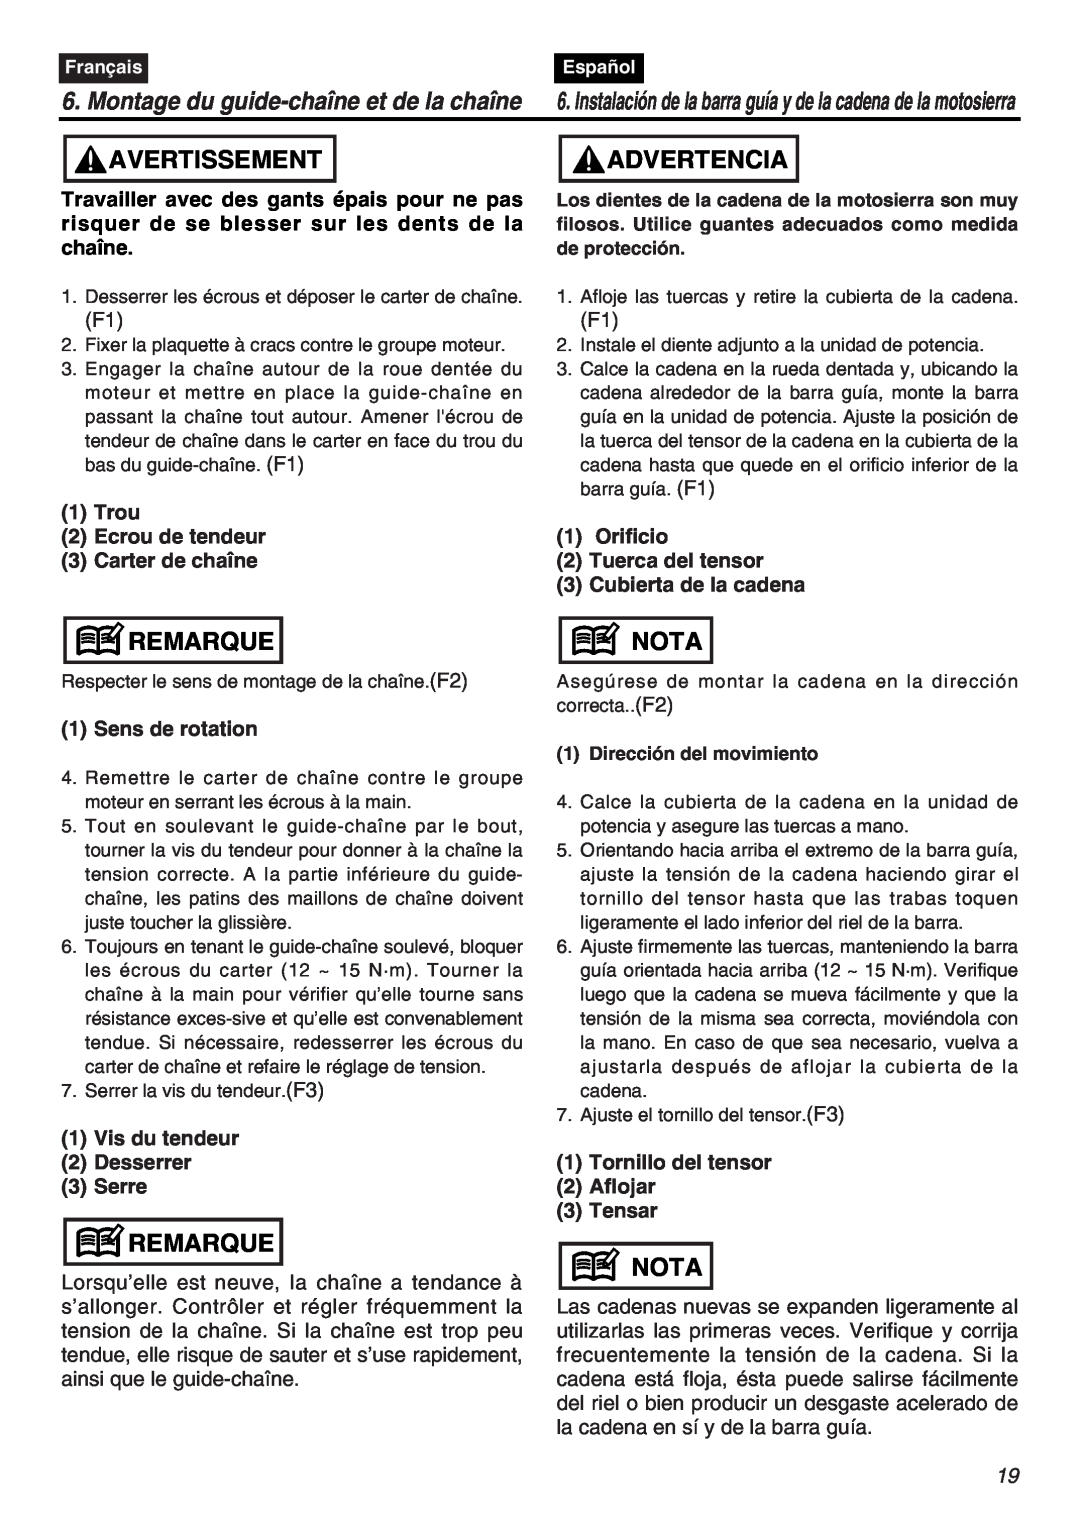 RedMax G5000AVS manual Montage du guide-chaîne et de la chaîne, Avertissement, Advertencia, Remarque, Nota 